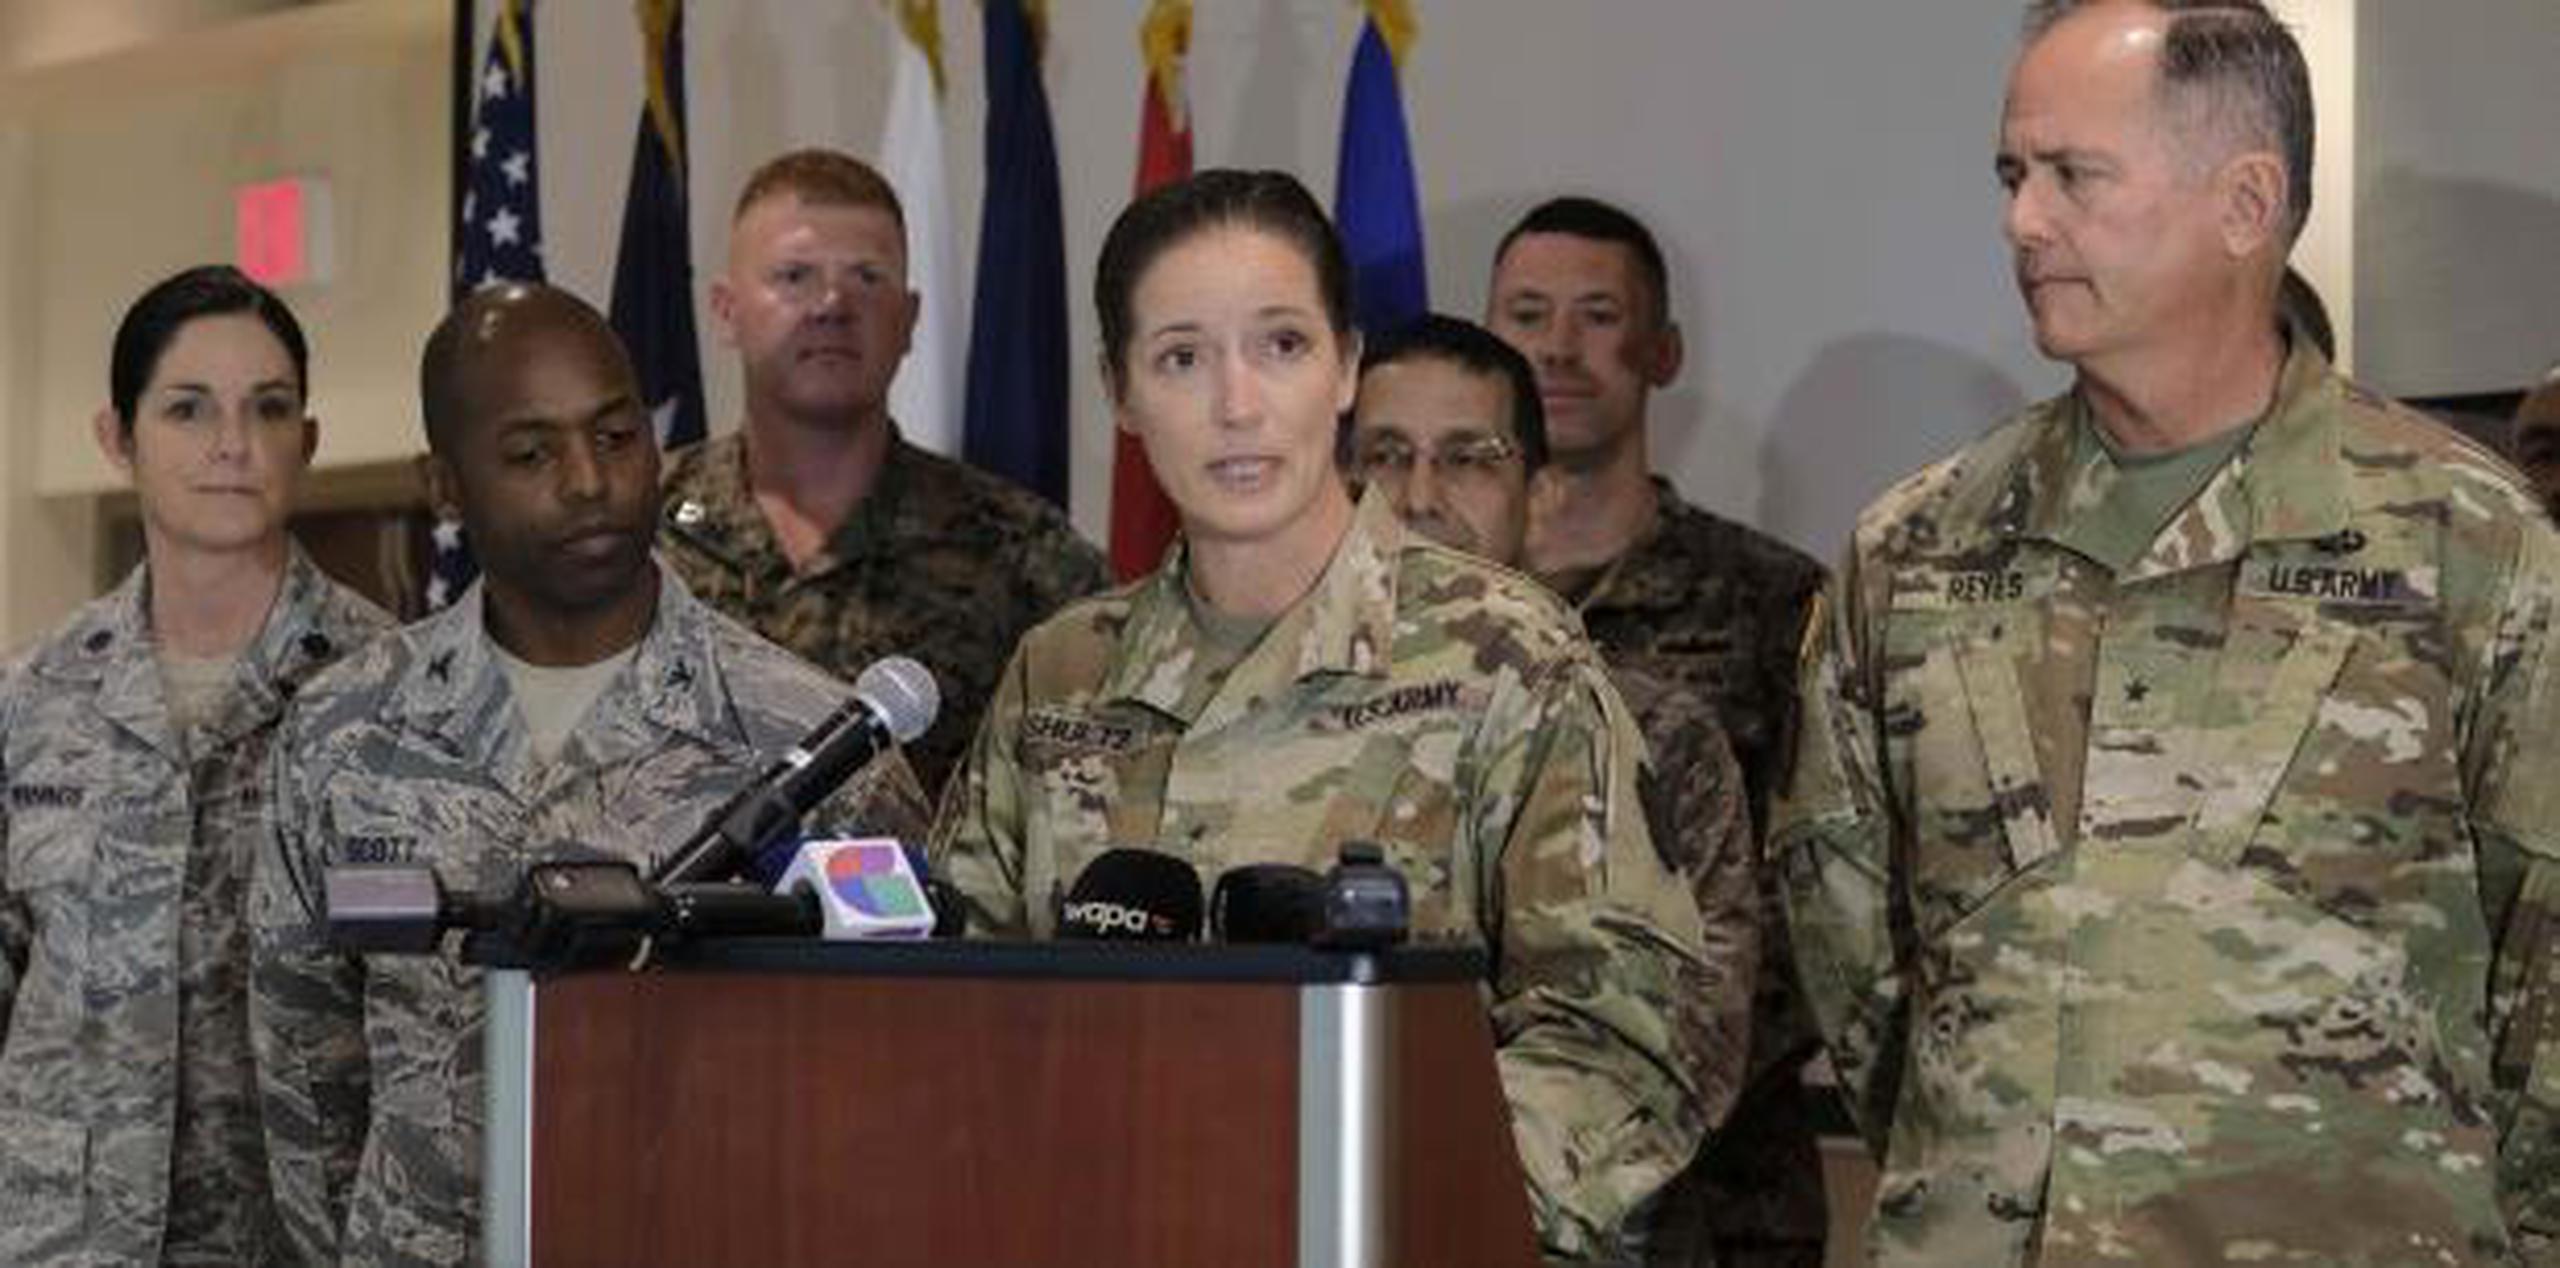 La General Dustin A. Shultz, comandante de la Reserva del Ejercito en Puerto Rico, explicó que la iniciativa que se lleva a cabo en conjunto con la Guardia Nacional, grupos de las fuerzas armadas y Assmca. (gerald.lopez@gfrmedia.com)

